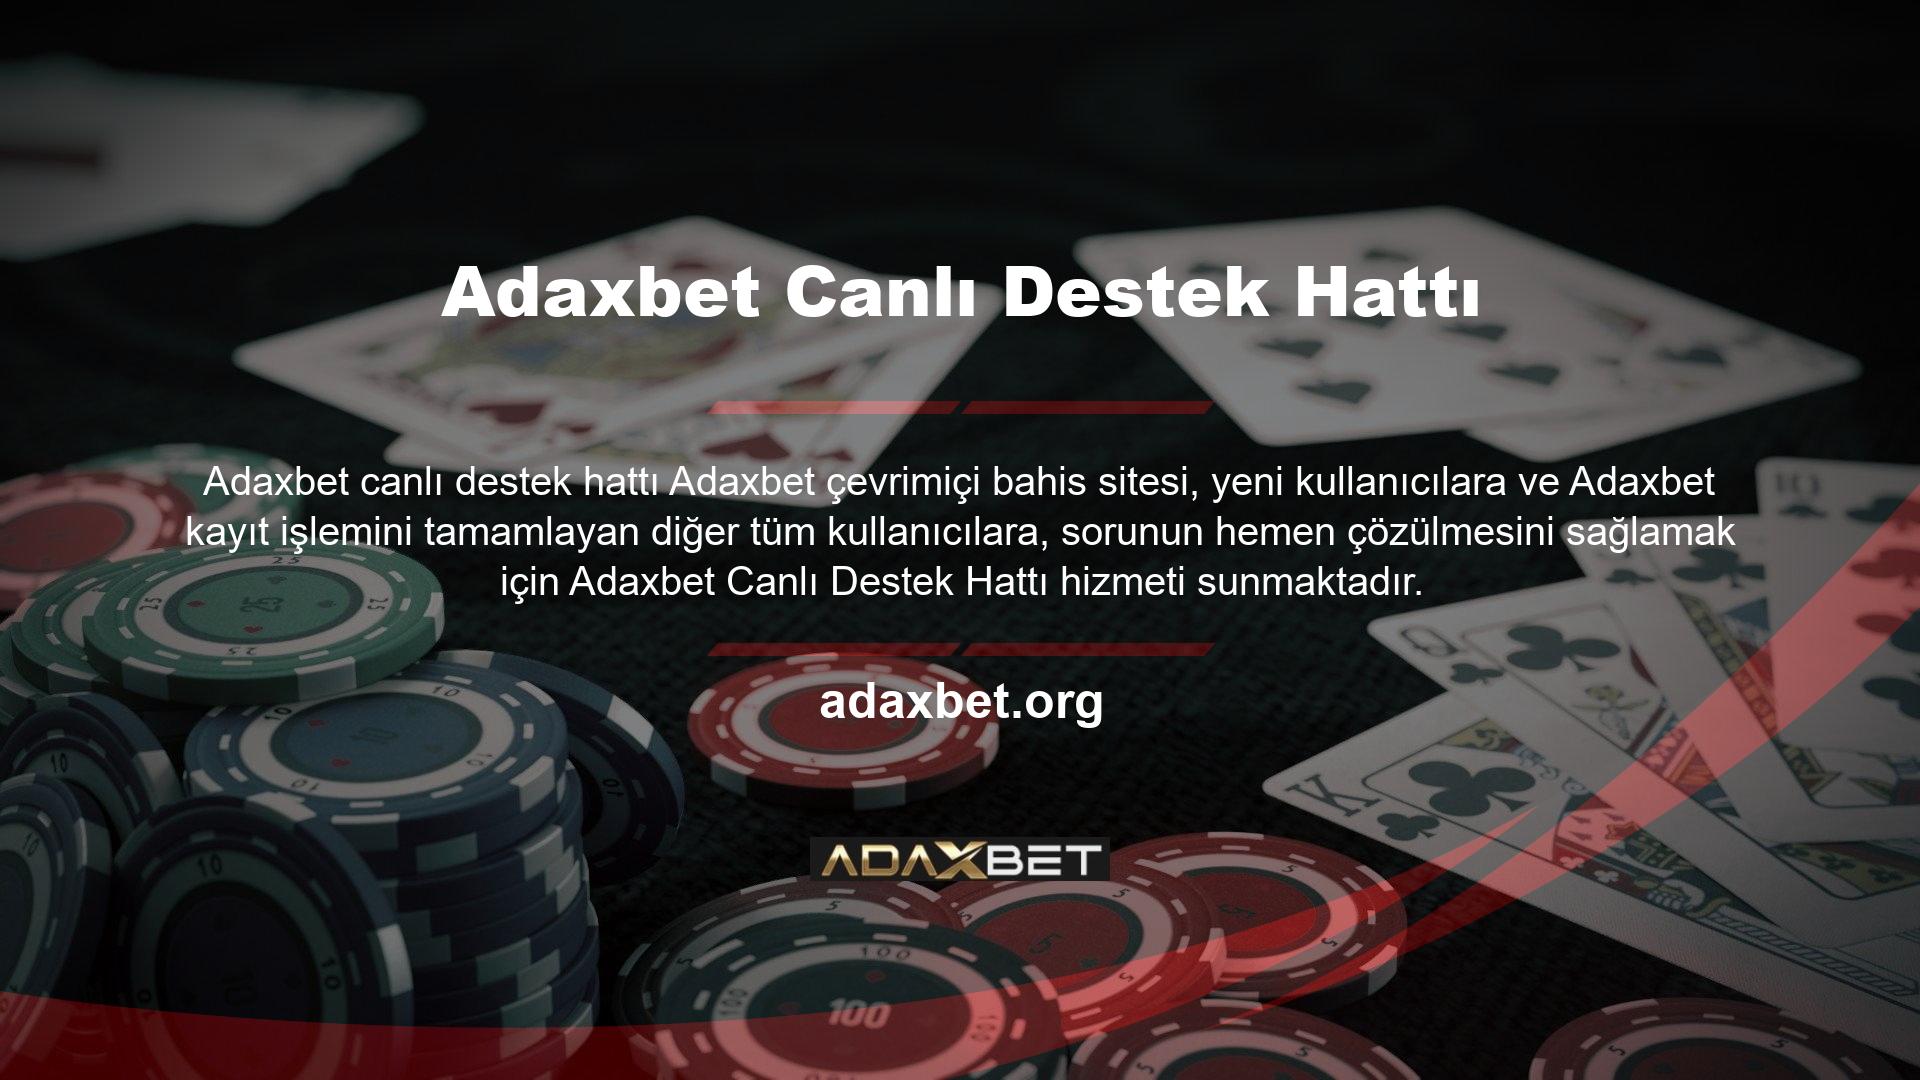 Adaxbet canlı destek hattı, site kullanıcılarına 7/24 hizmet vermekte ve kullanıcı sorunlarının çözümü için anında müdahale edebilmektedir